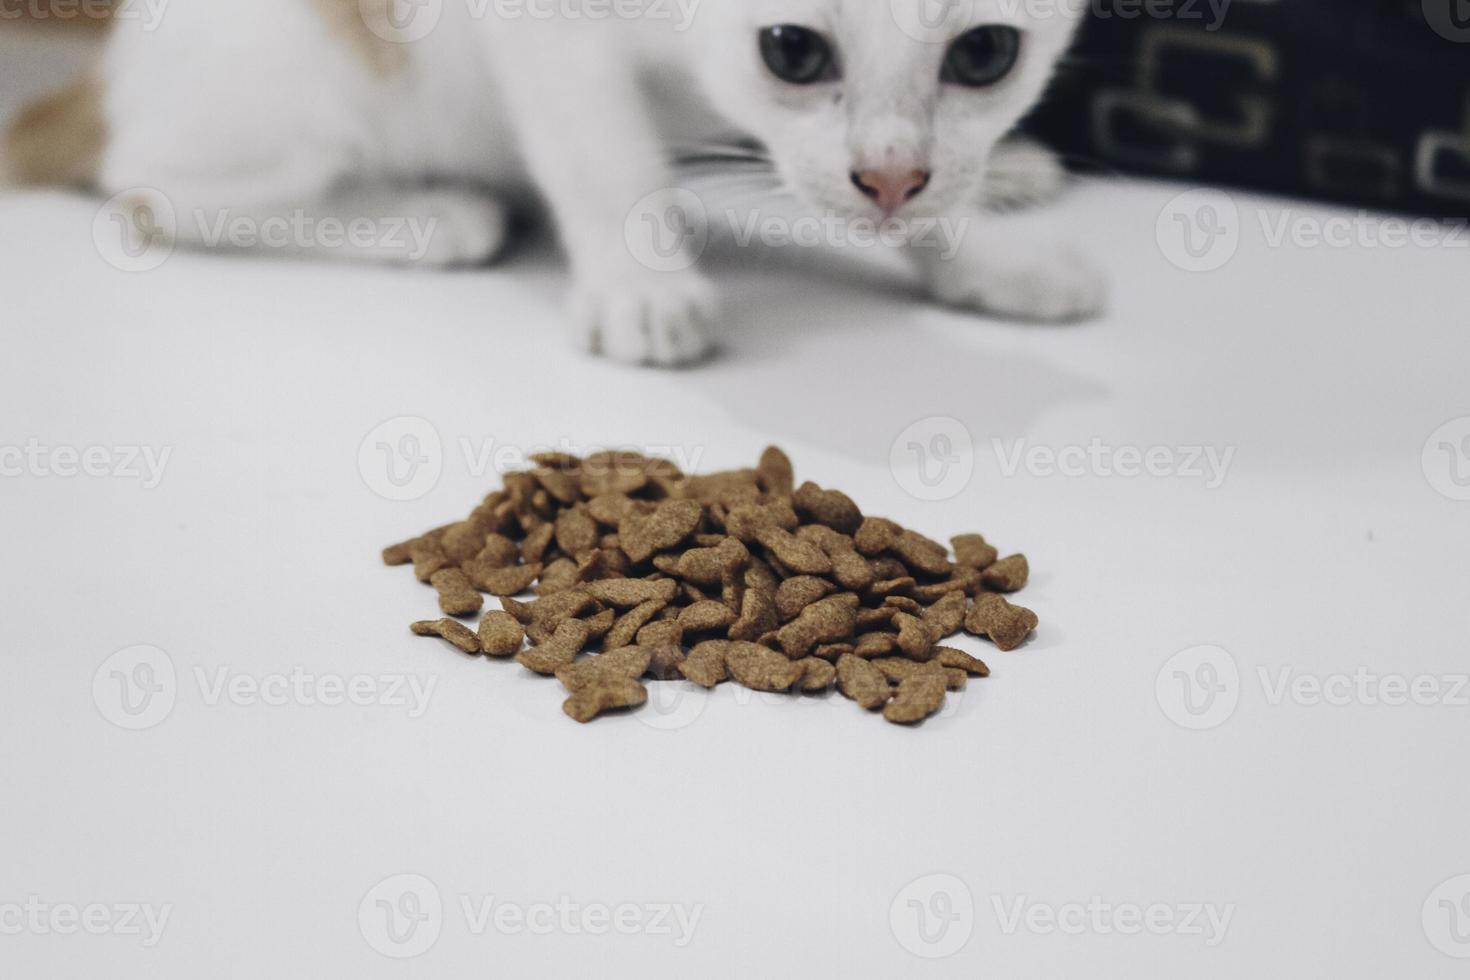 chat tigré mange de la nourriture sèche pour chat du sol blanc photo